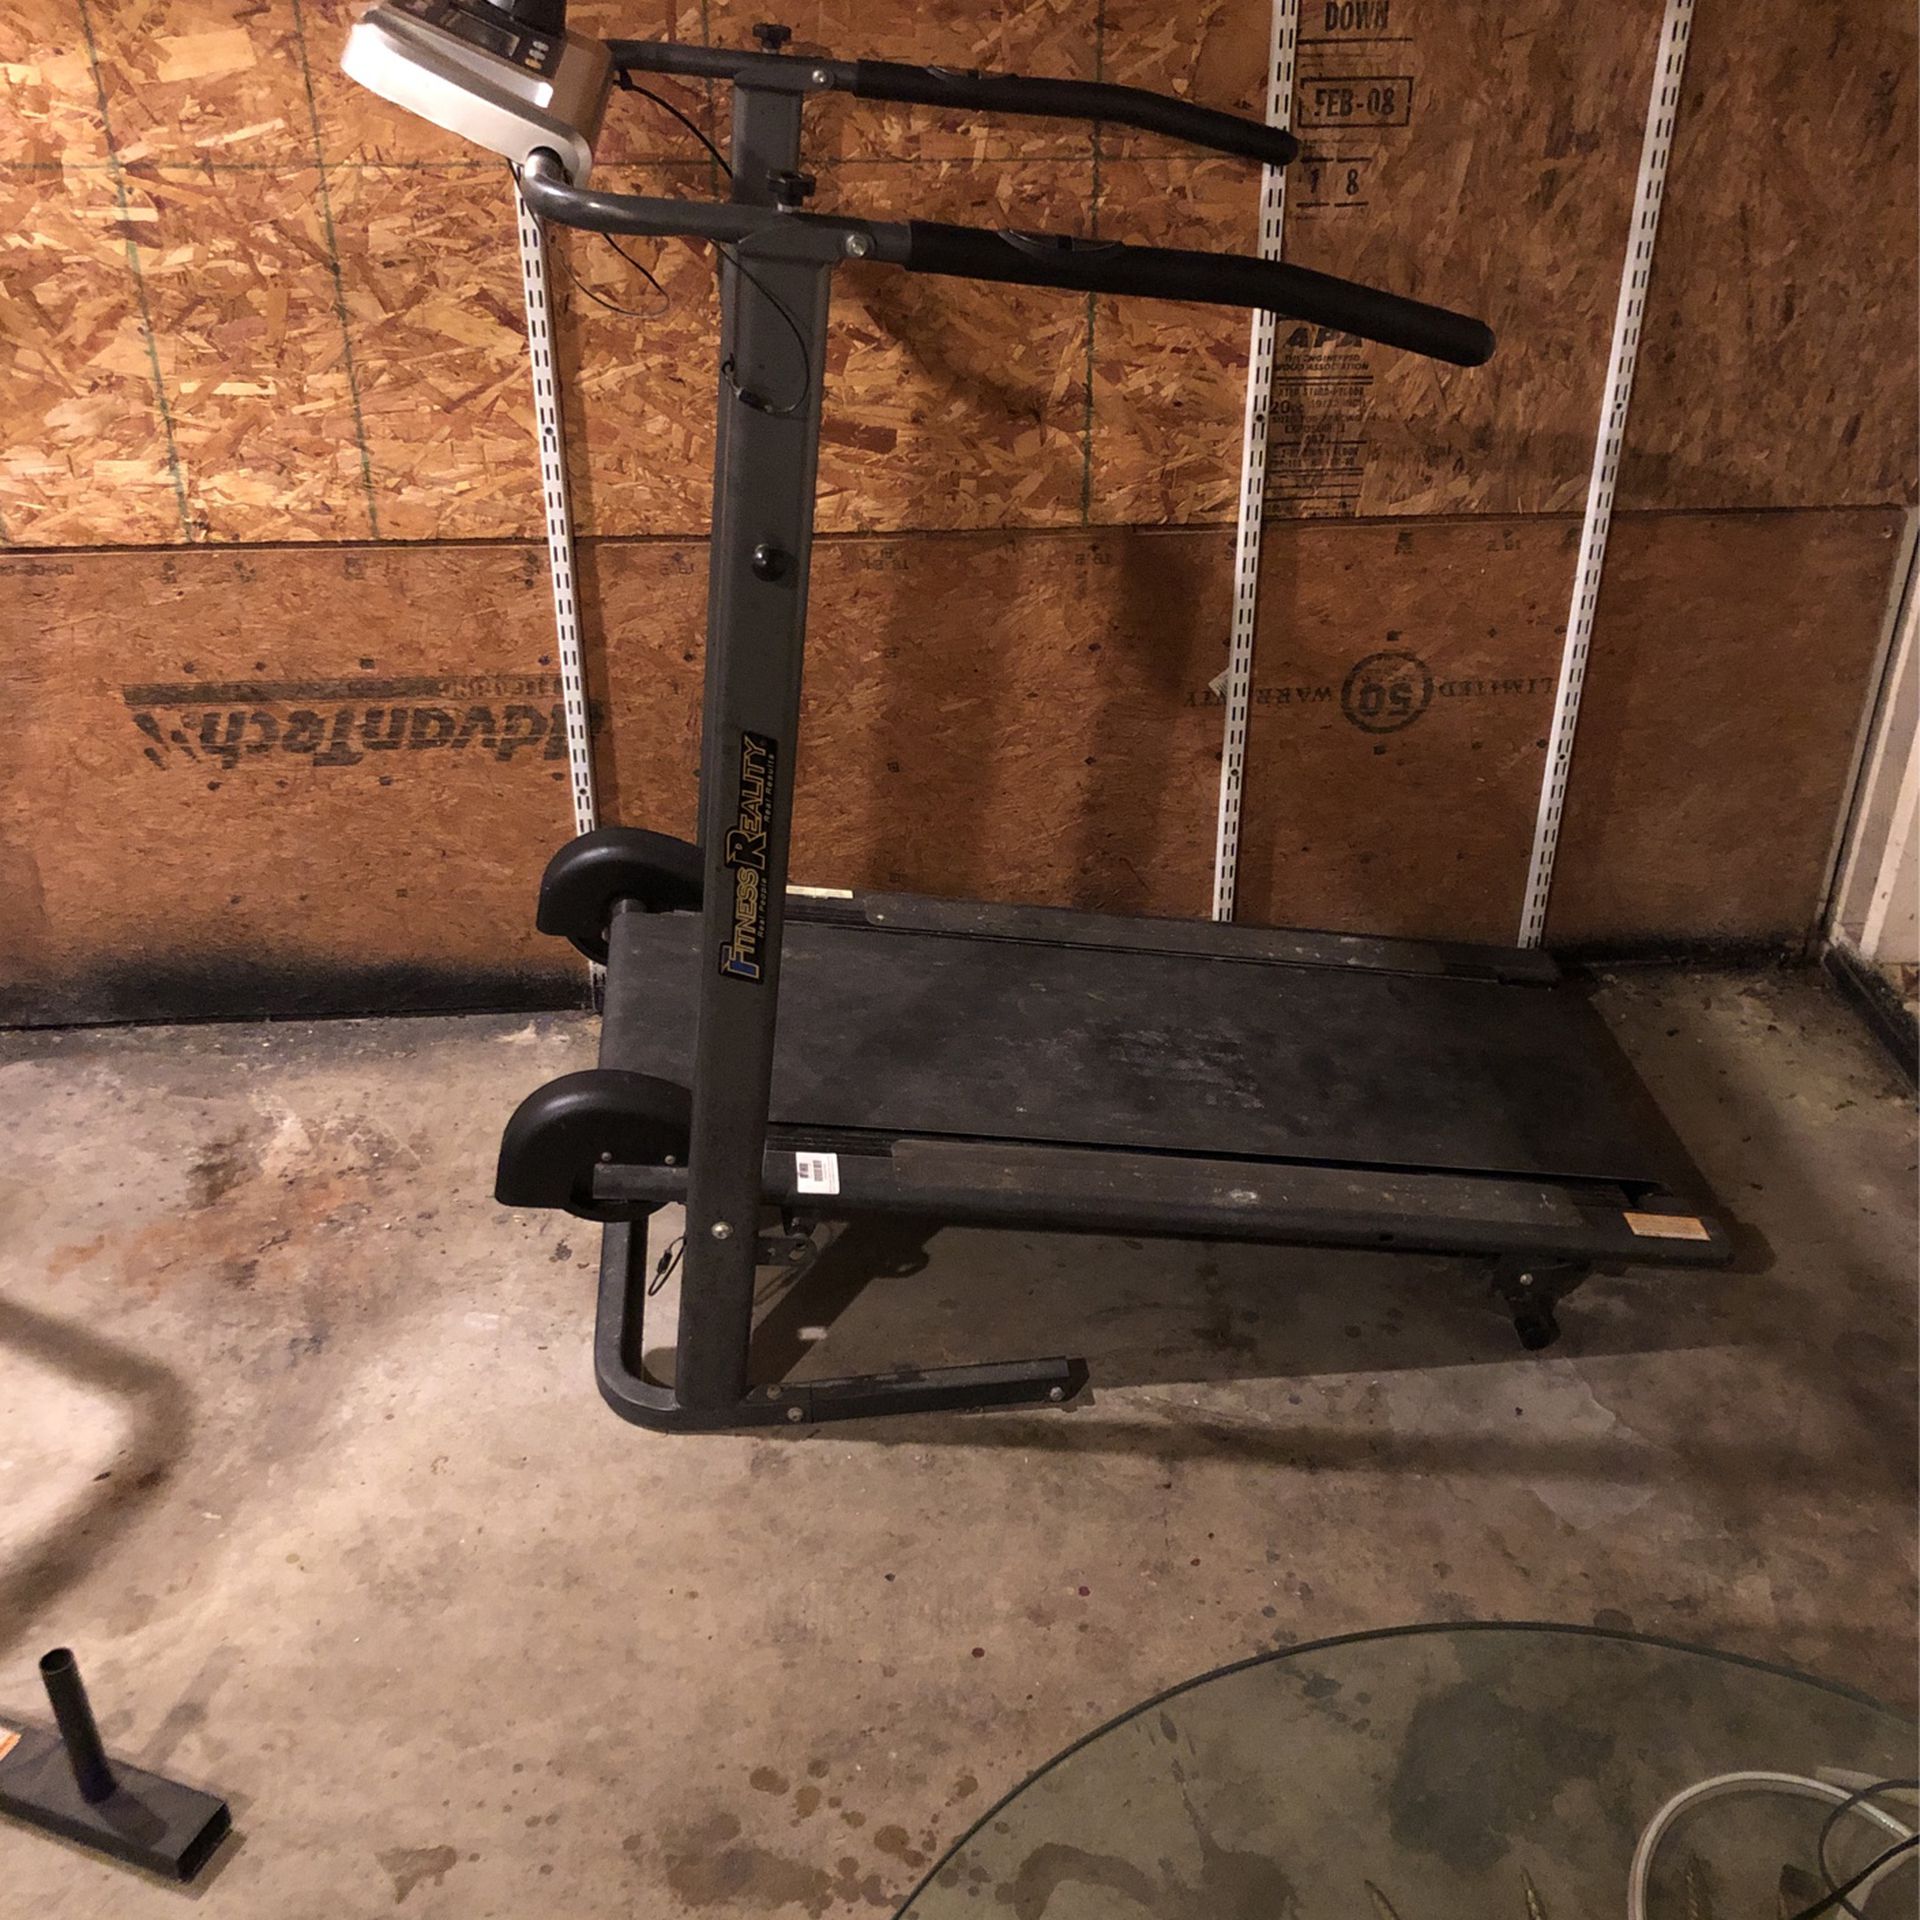 Power Treadmill